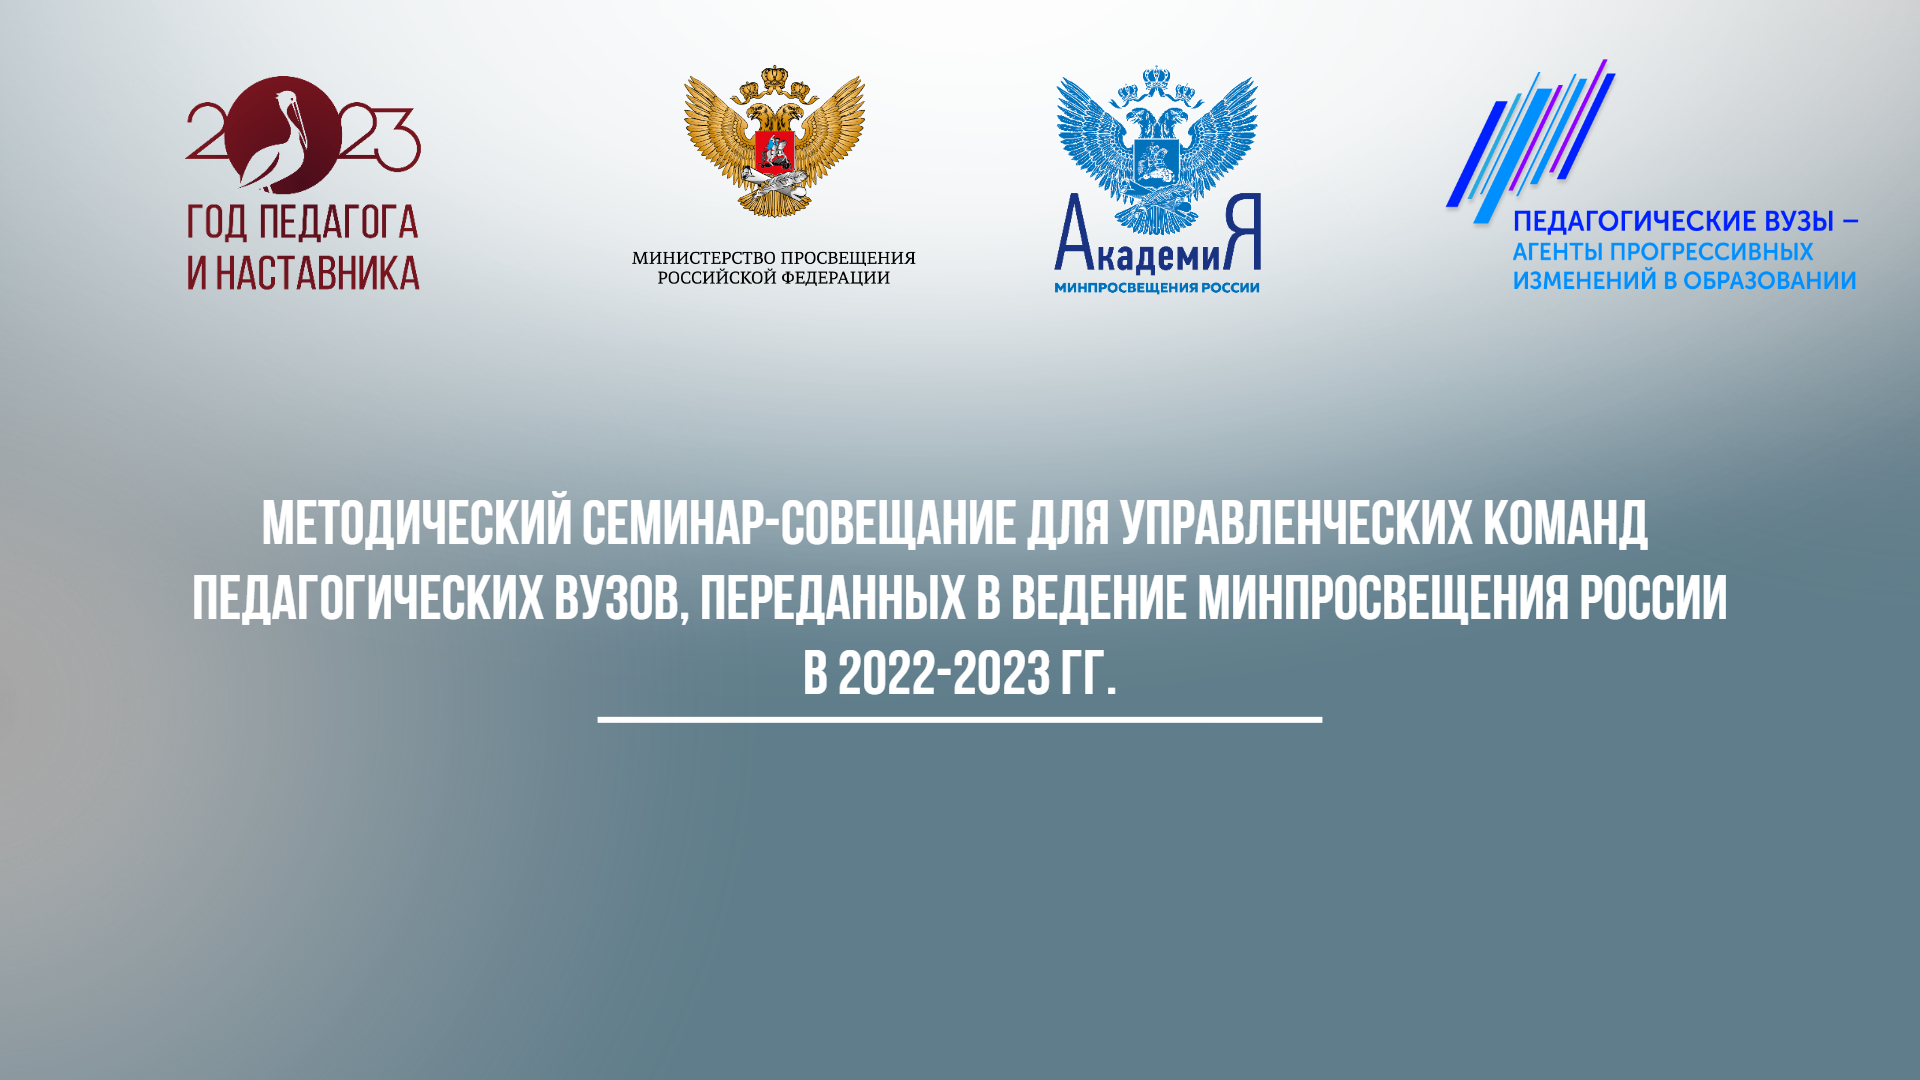 Методический семинар-совещание для управленческих команд педагогических вузов, переданных в ведение Минпросвещения России в 2022-2023 гг., начнется 13 ноября